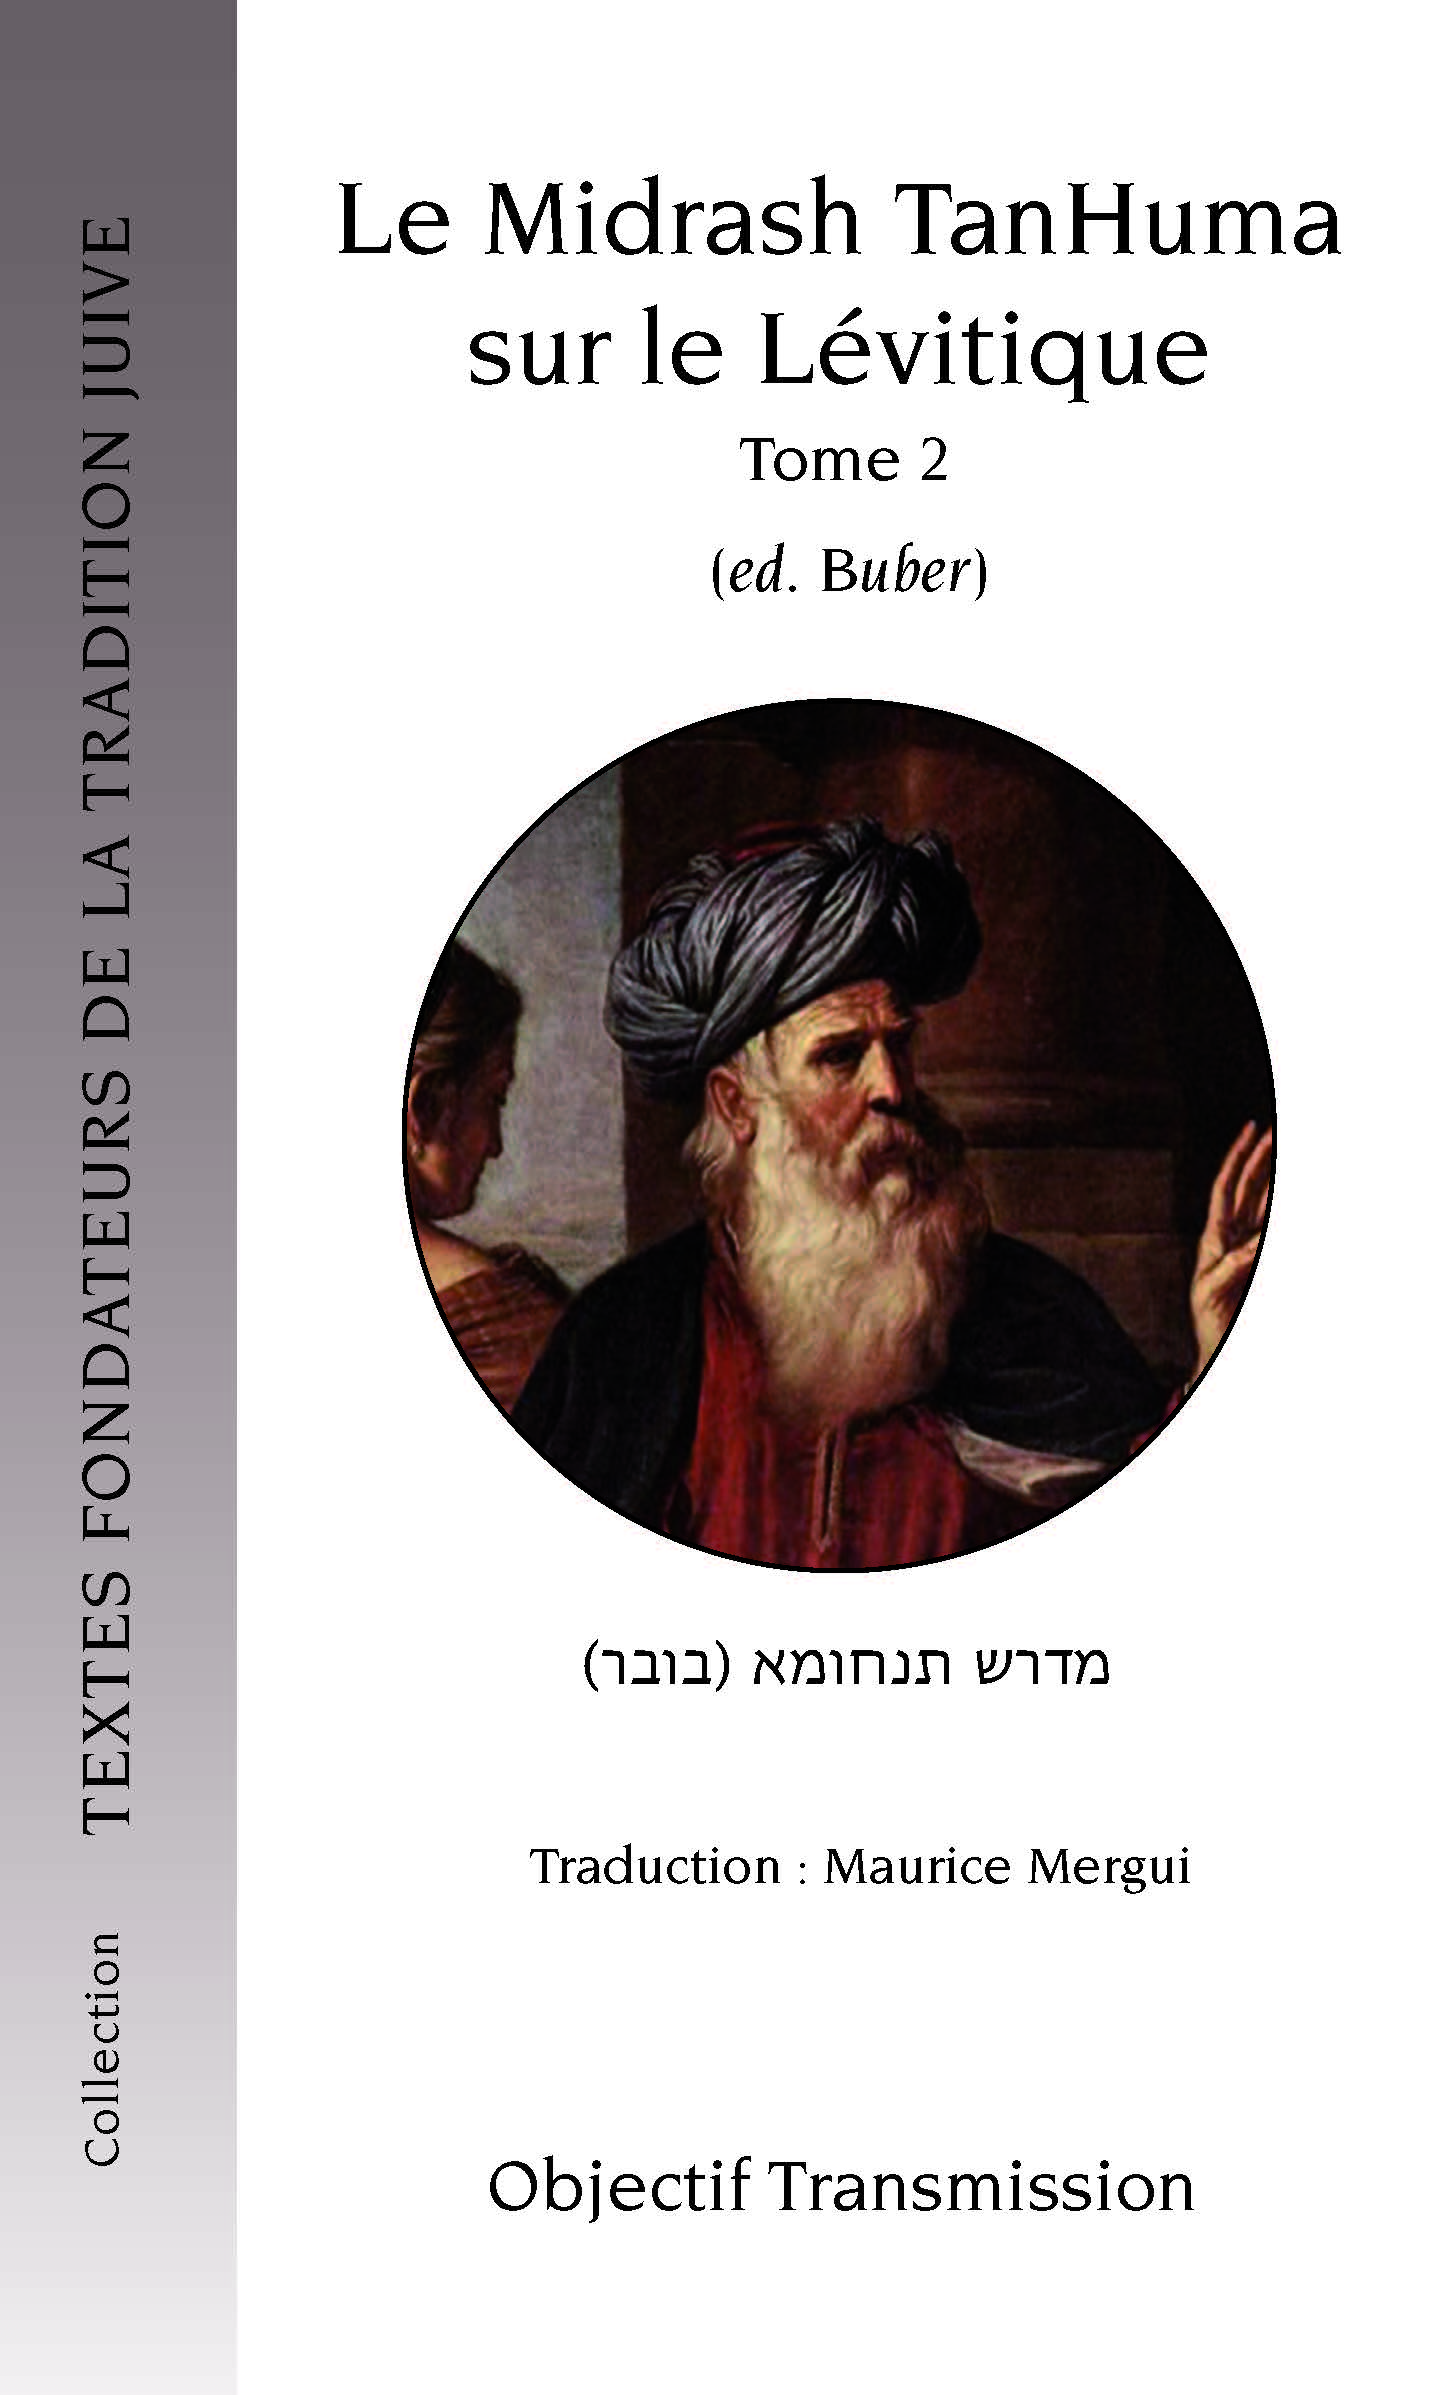 Le Midrash TanHuma sur le Lévitique (version Buber) Tome 2 